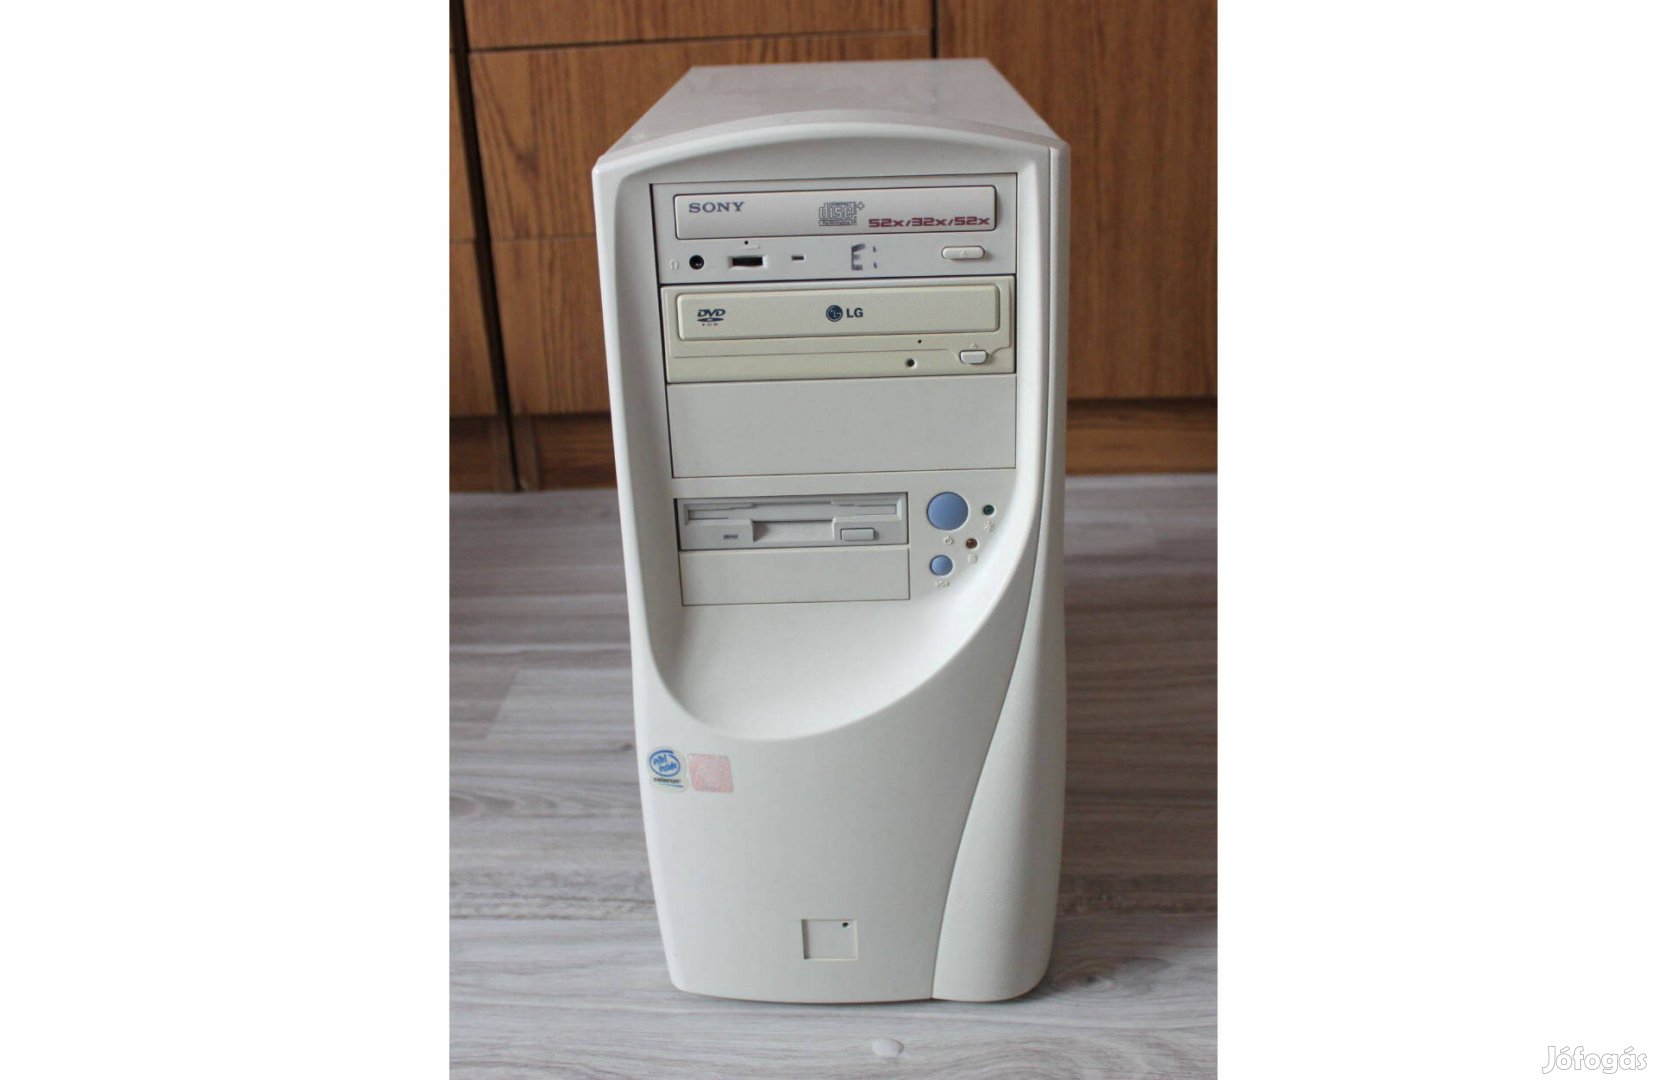 Retró PC 2003: 512 MB, 2 x HDD, 2 x DVD/CD, floppy, stb